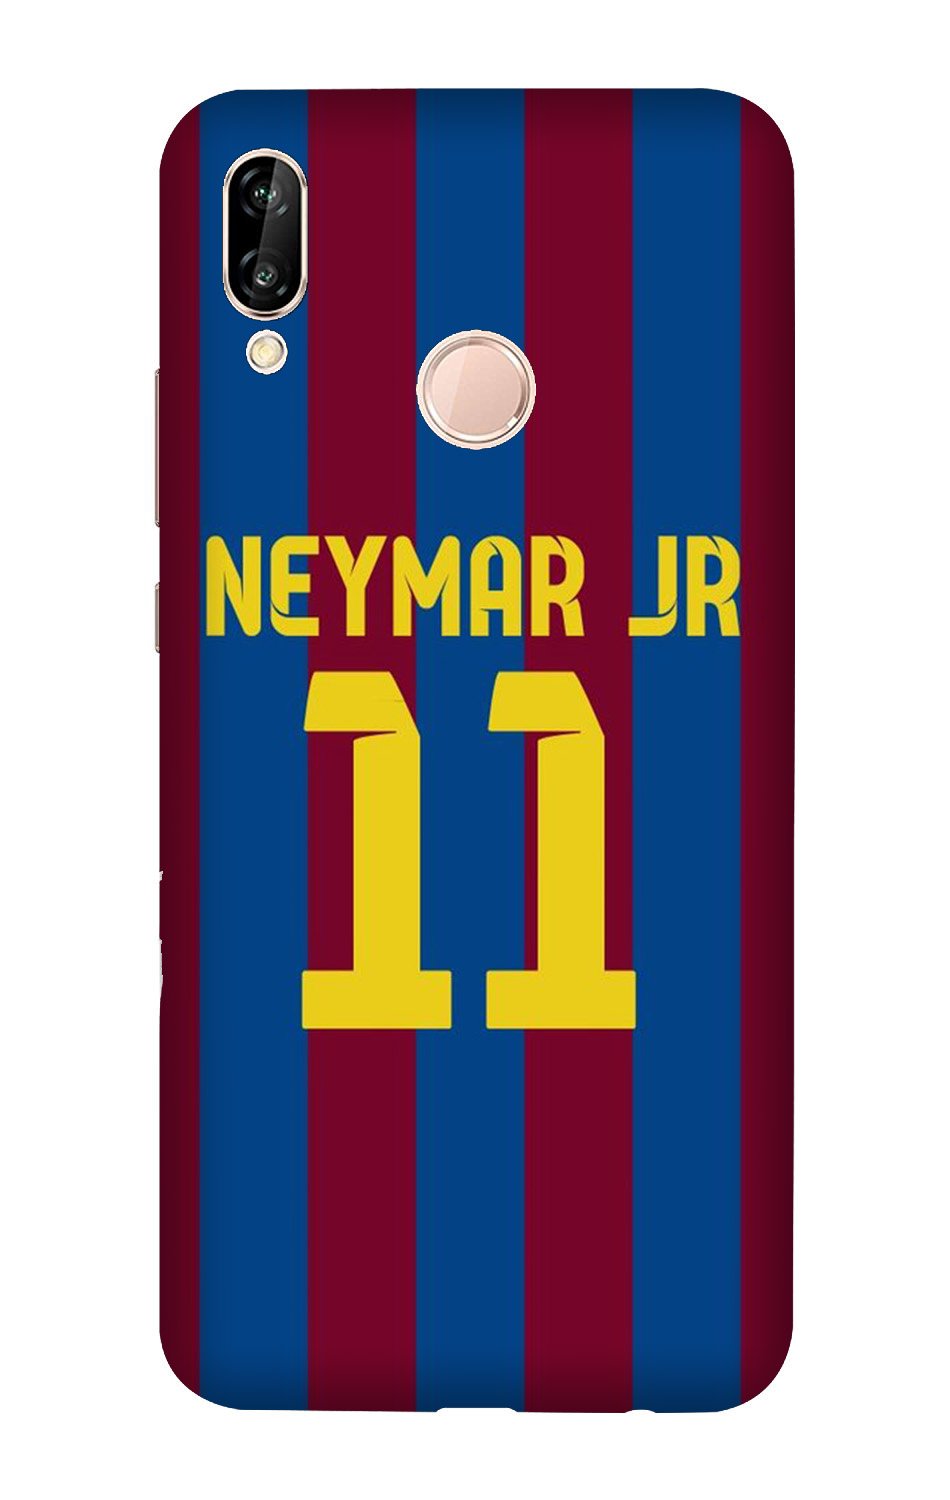 Neymar Jr Case for Vivo V11(Design - 162)